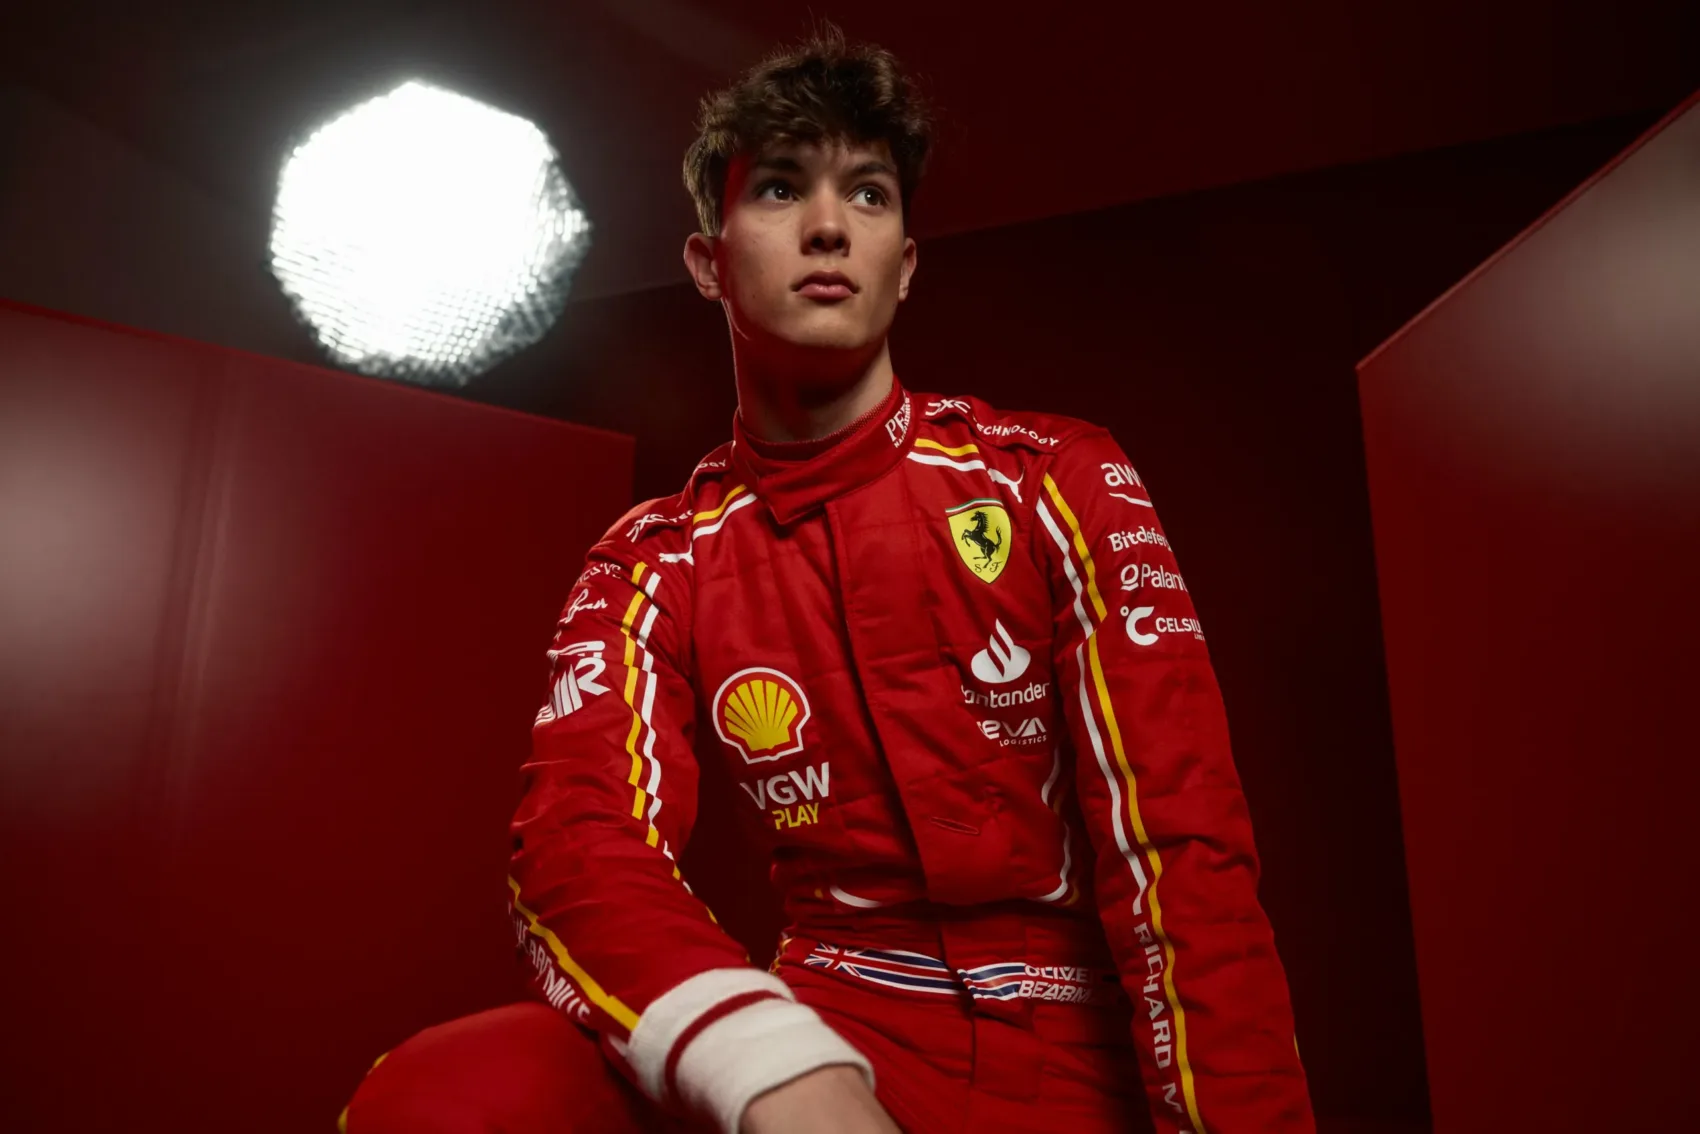 18 éves csodagyerek megdönti a Ferrari rekordját az F1-ben